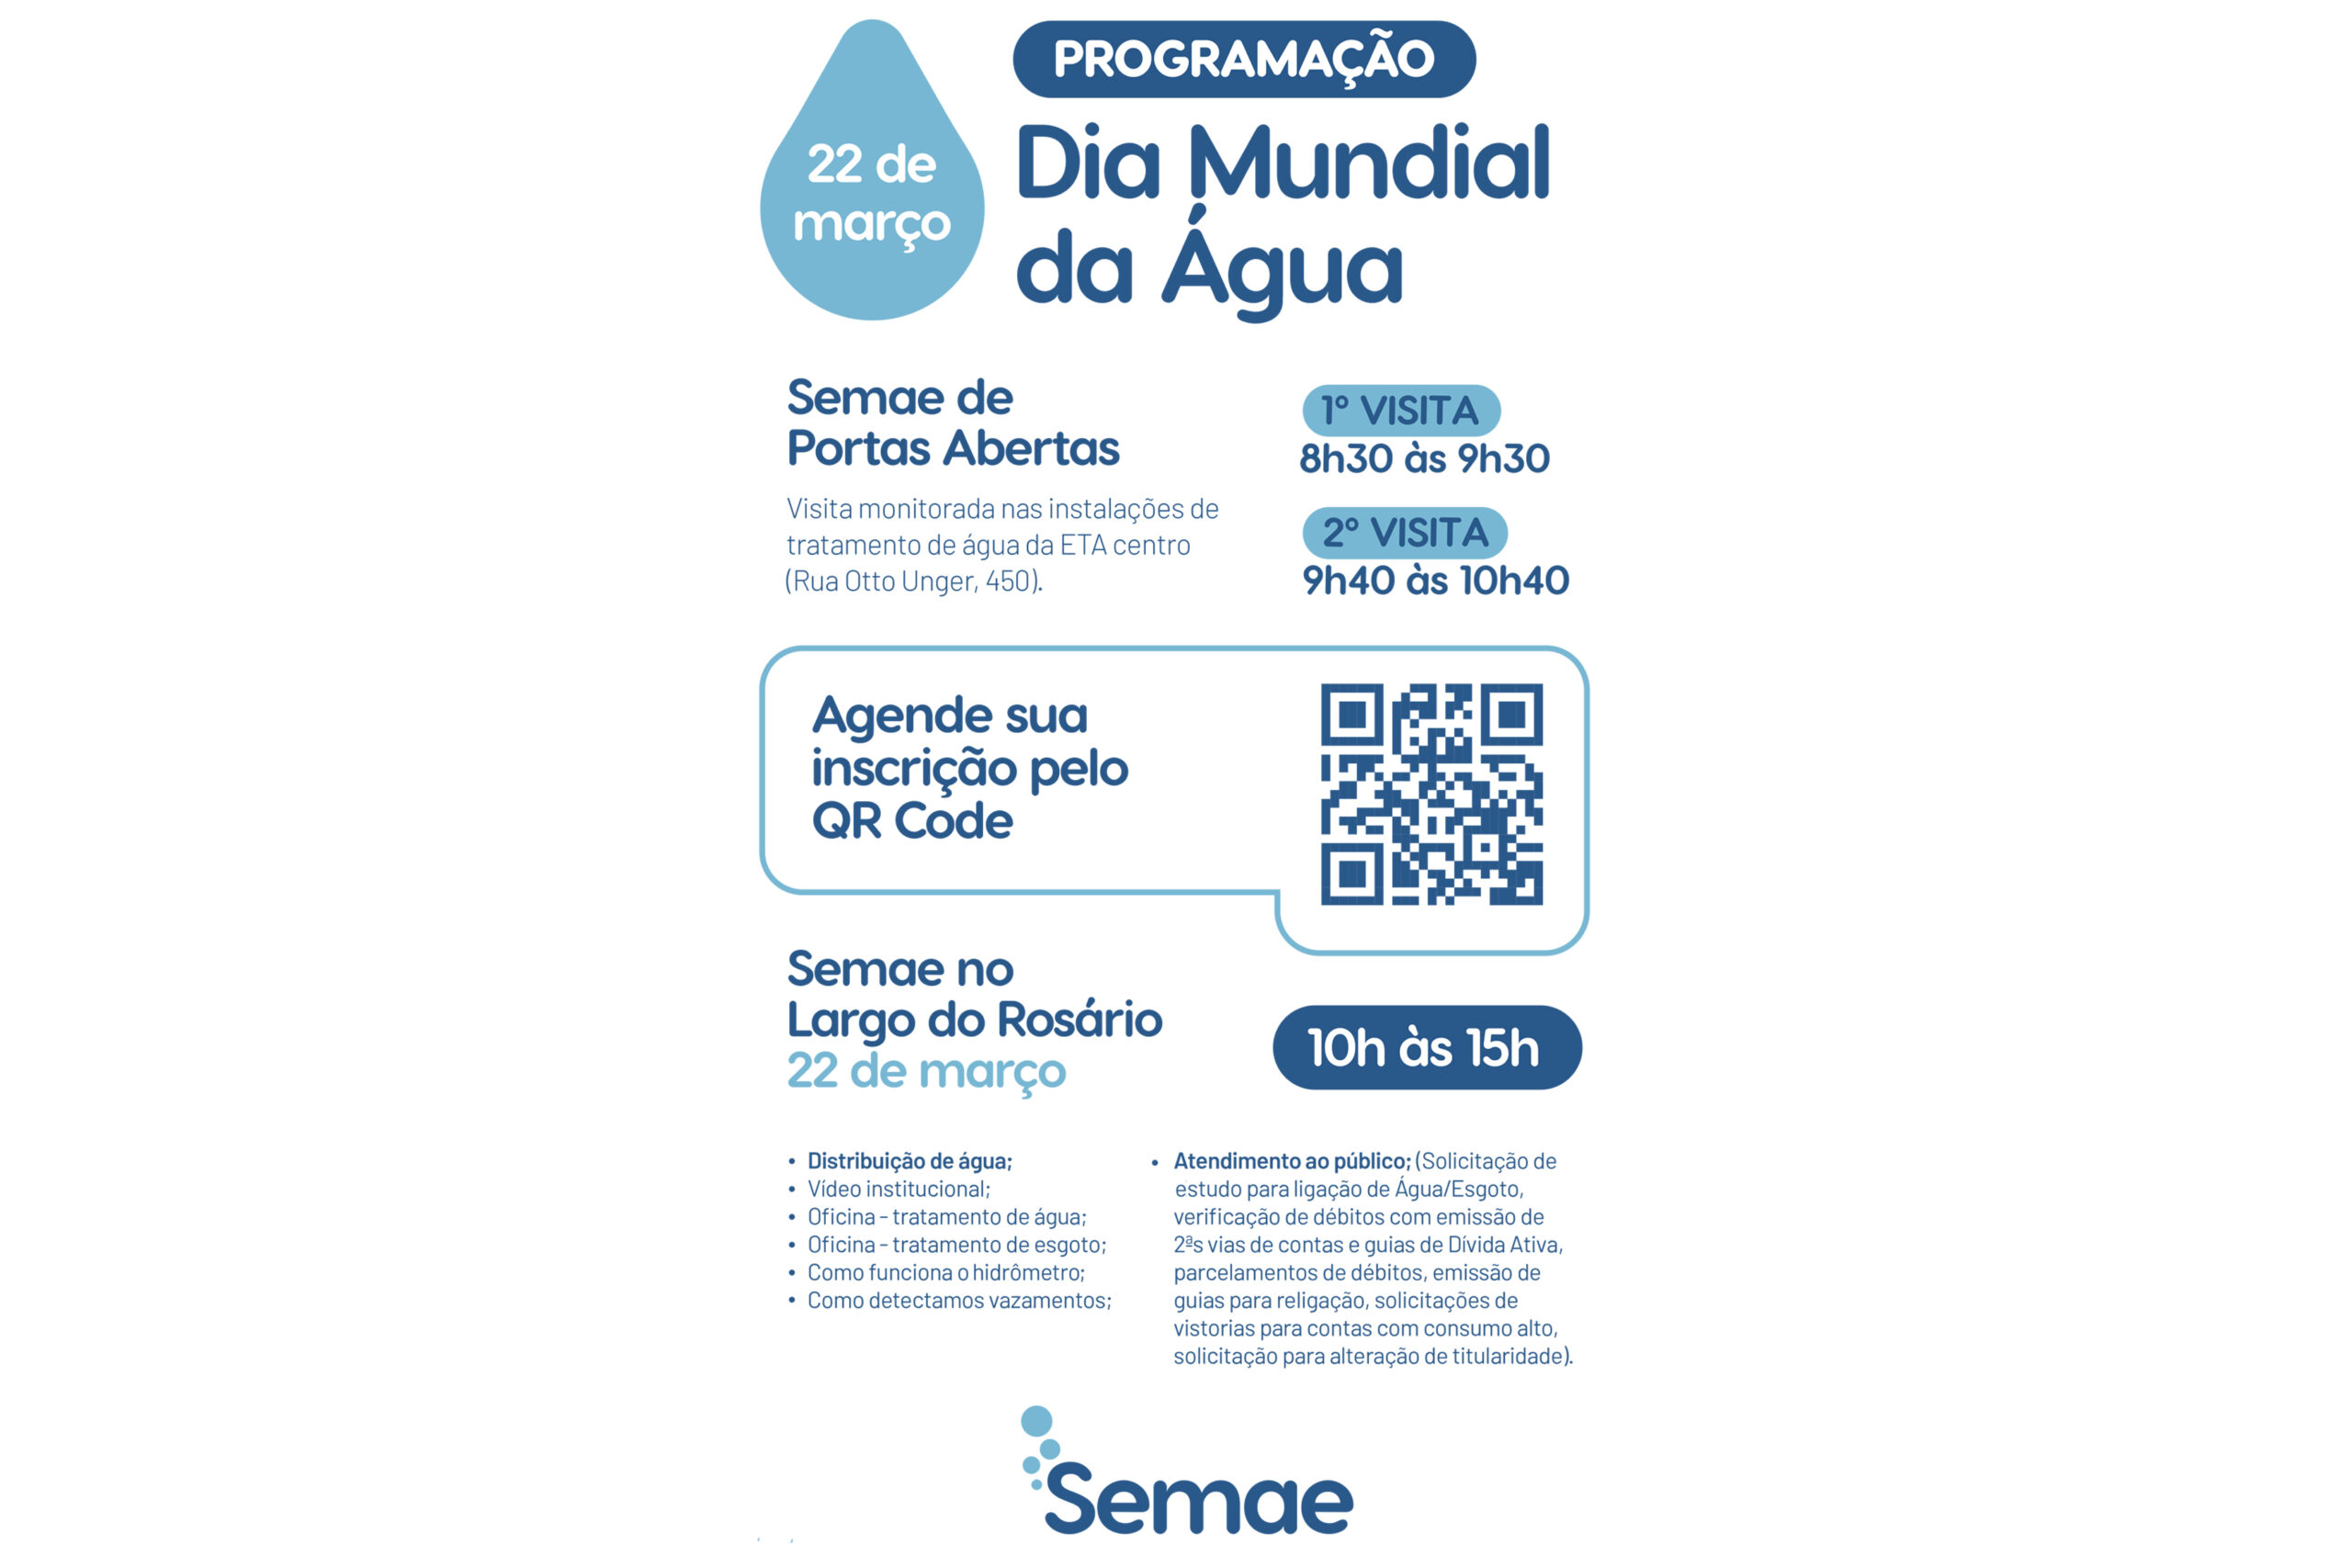 No Dia da Água (22/03), autarquia realiza os eventos Semae na Praça e Semae de Portas Abertas